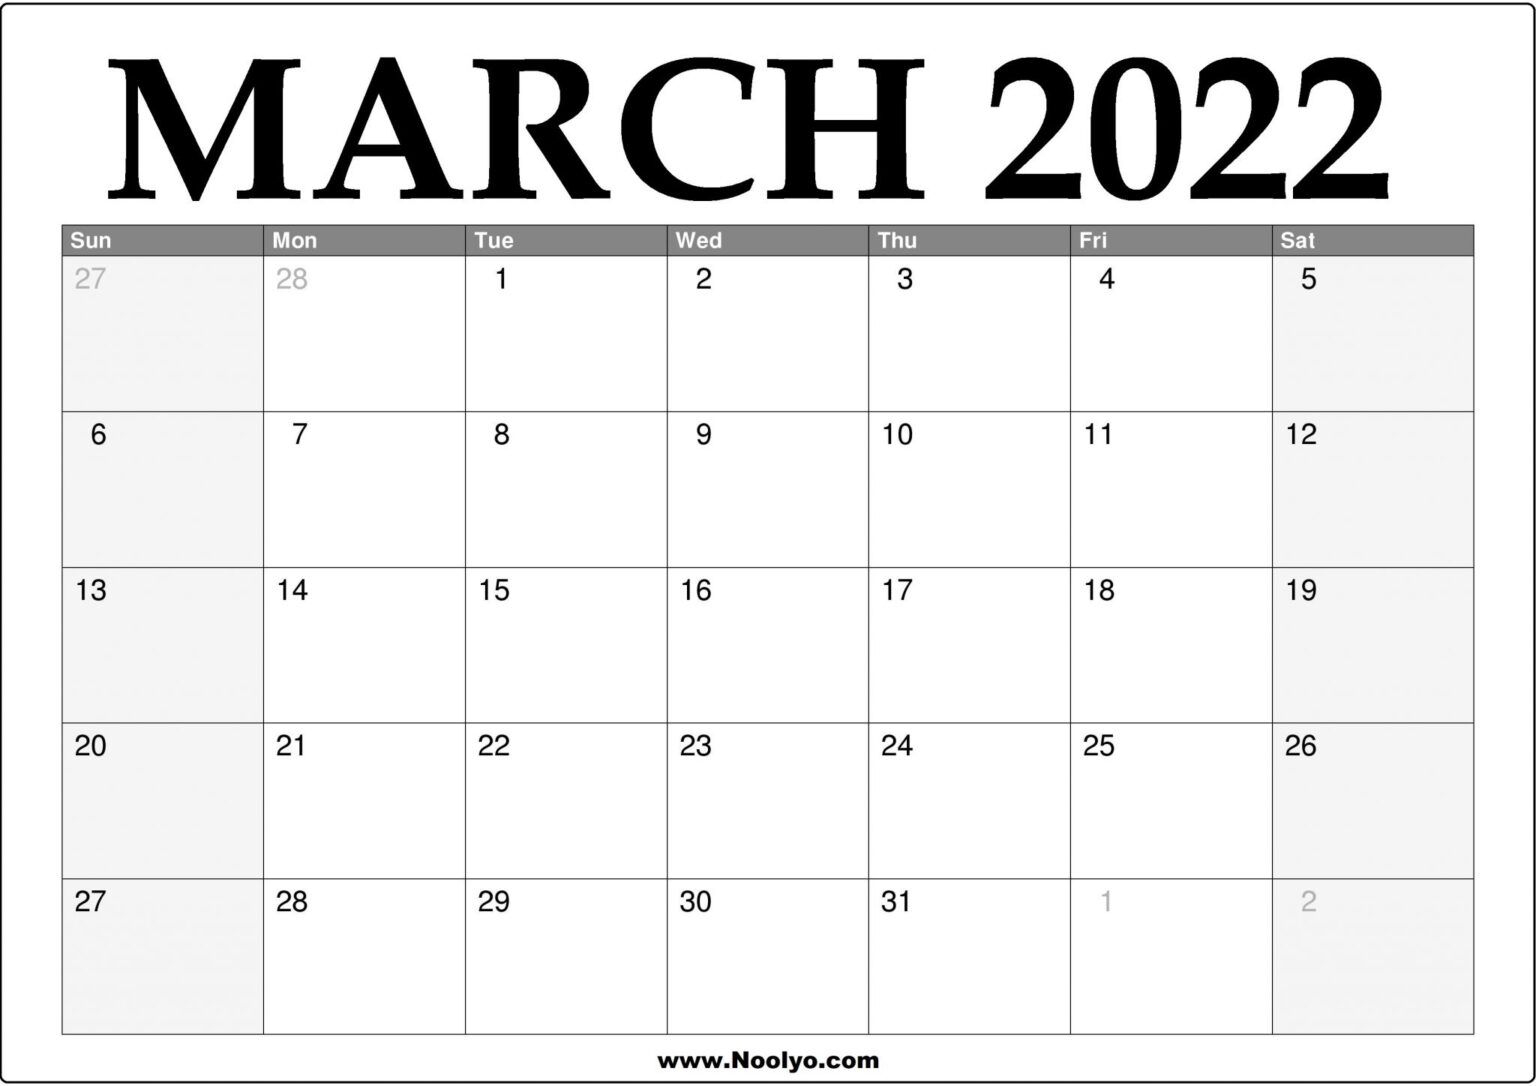 March 2022 Calendar Google - Latest News Update